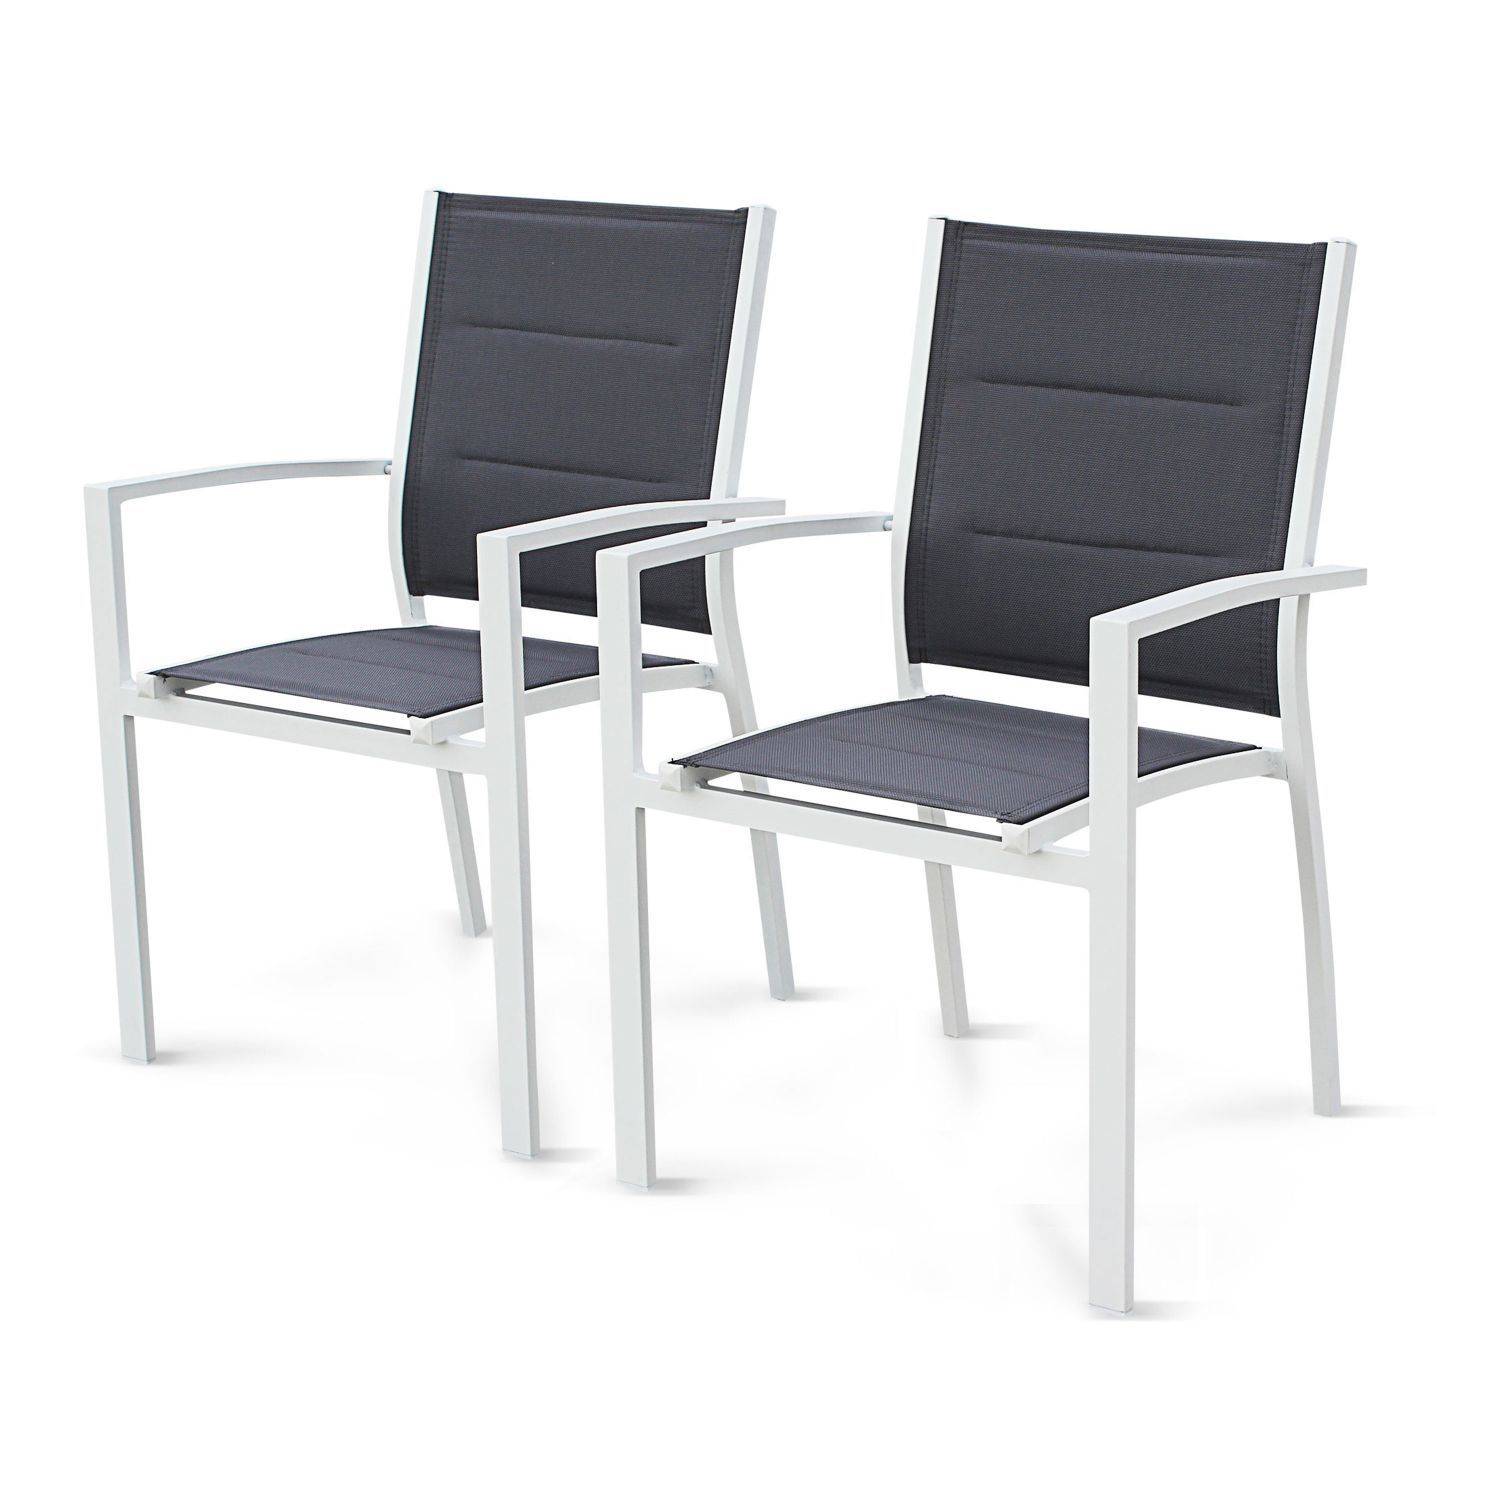 Chicago set, 1 tafel met een verlengstuk,  2 fauteuils, 6 stoelen uit aluminium en textileen Photo5